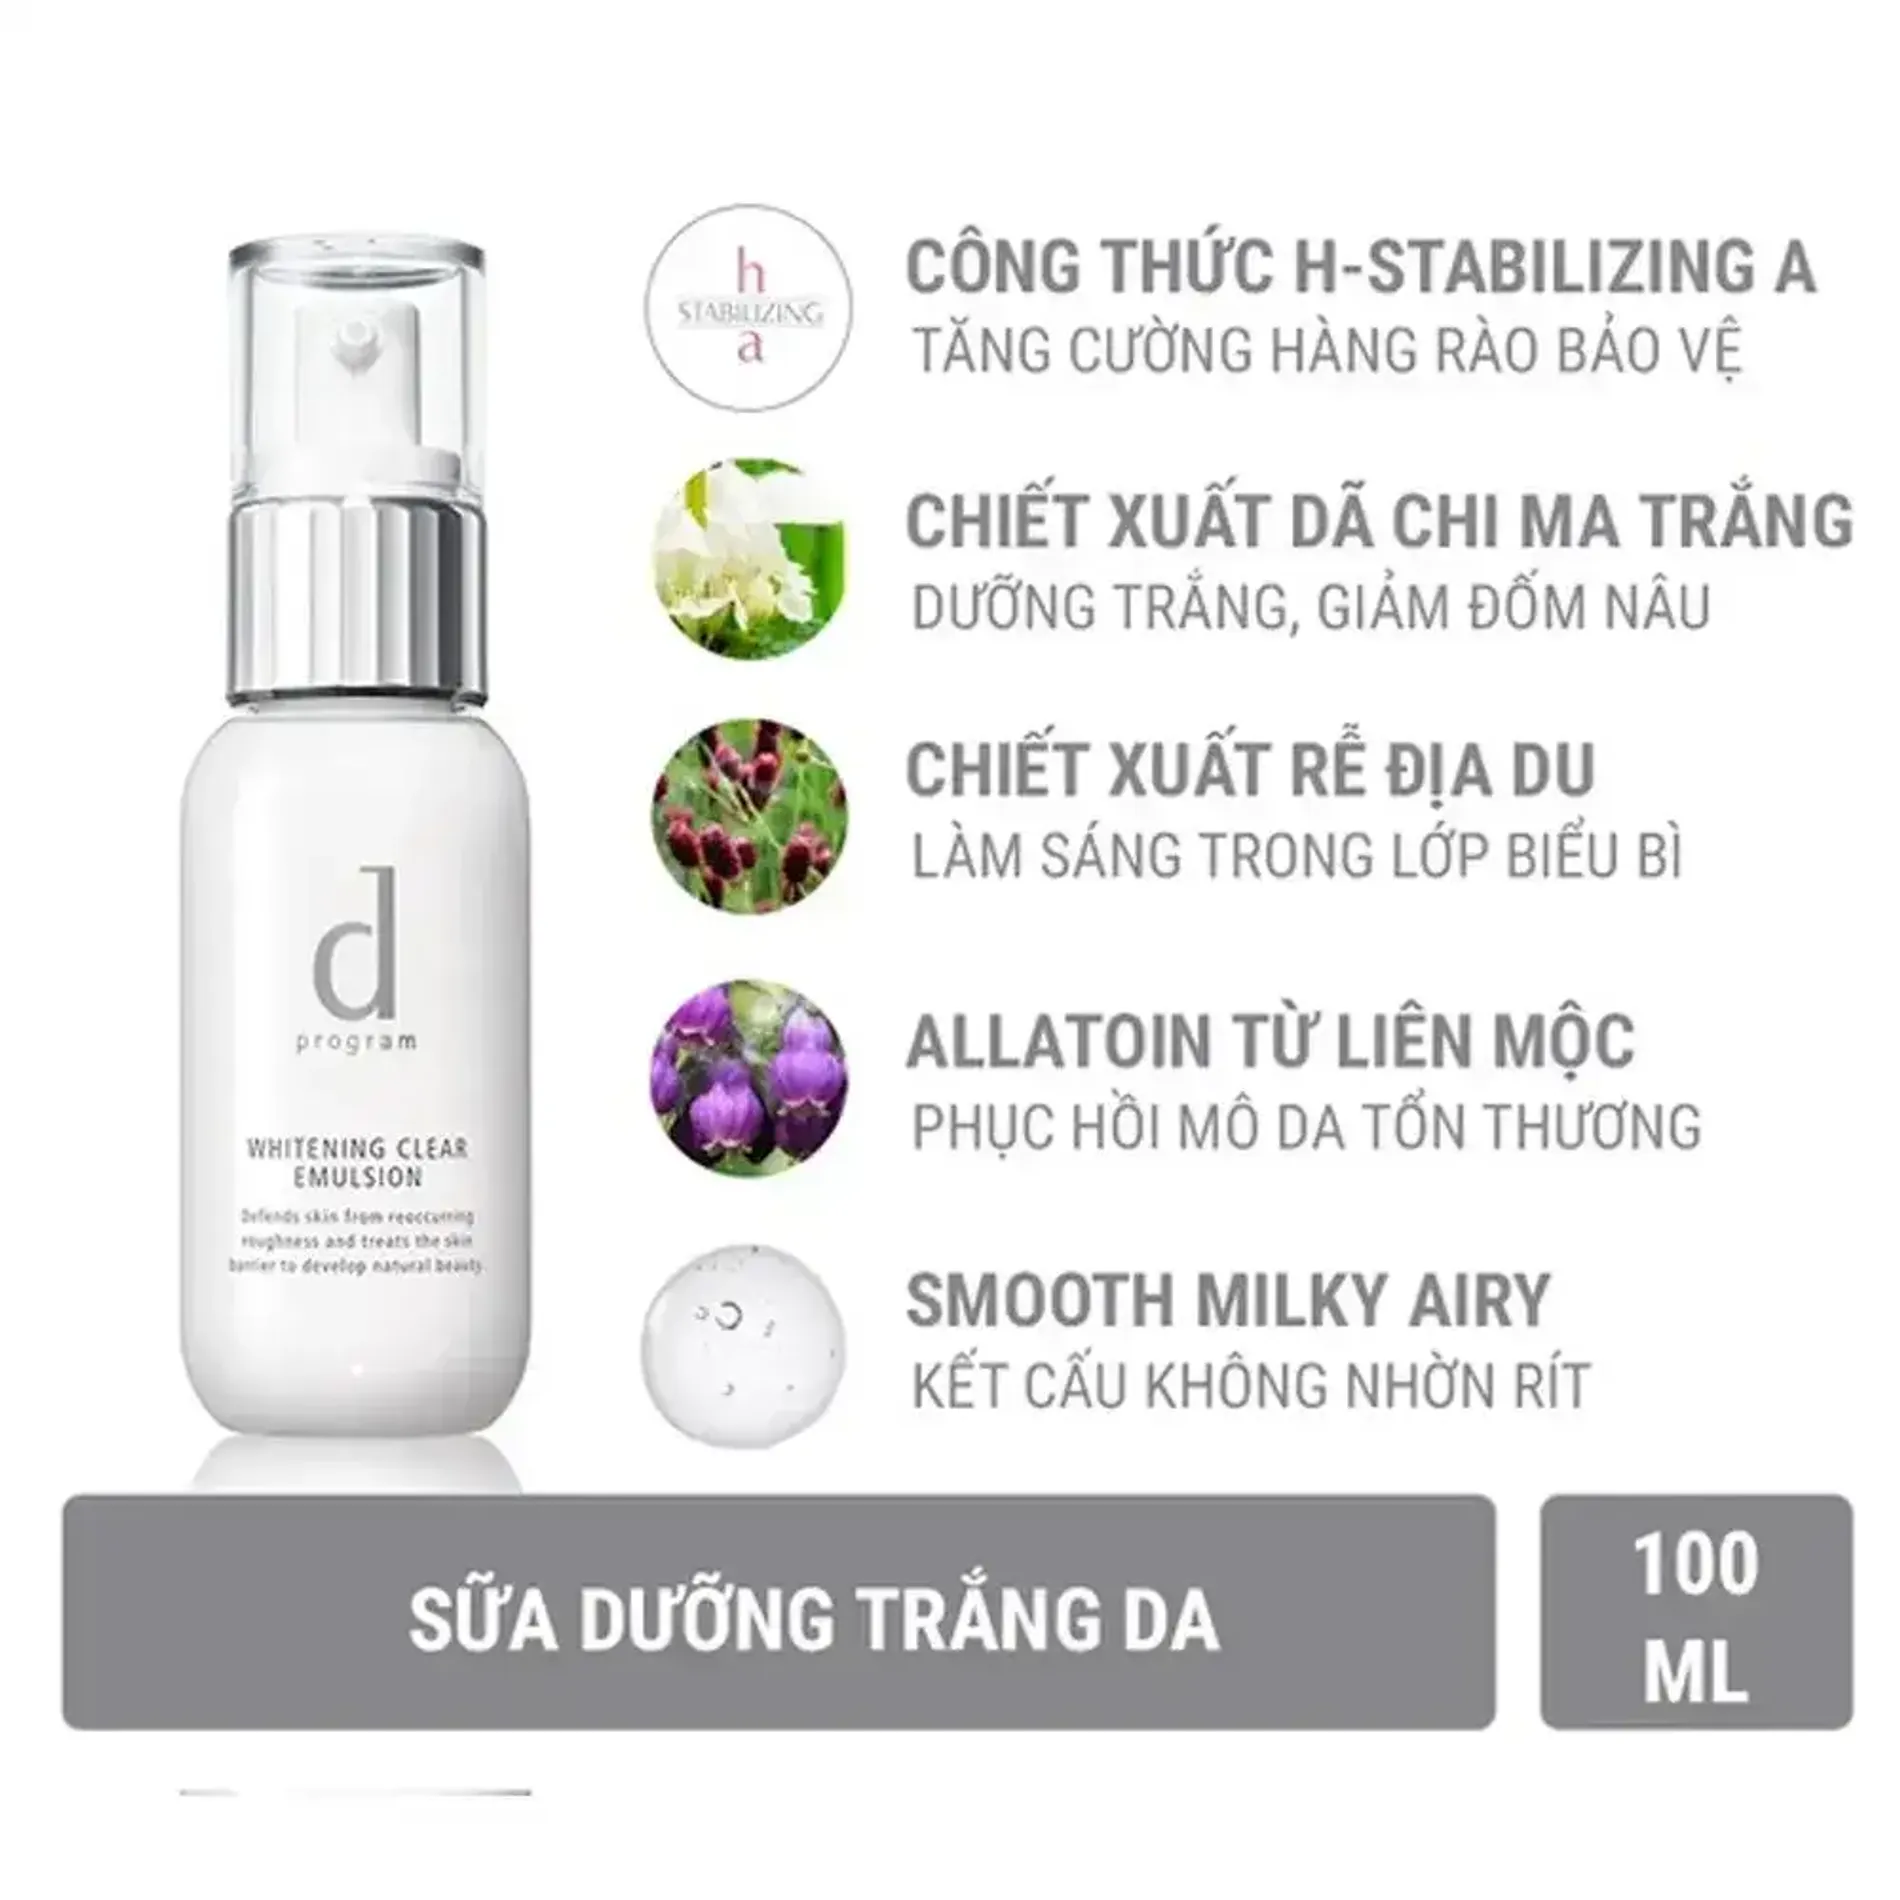 bo-doi-chong-nang-duong-trang-da-dprogram-whitening-clear-emulsion-100ml-4